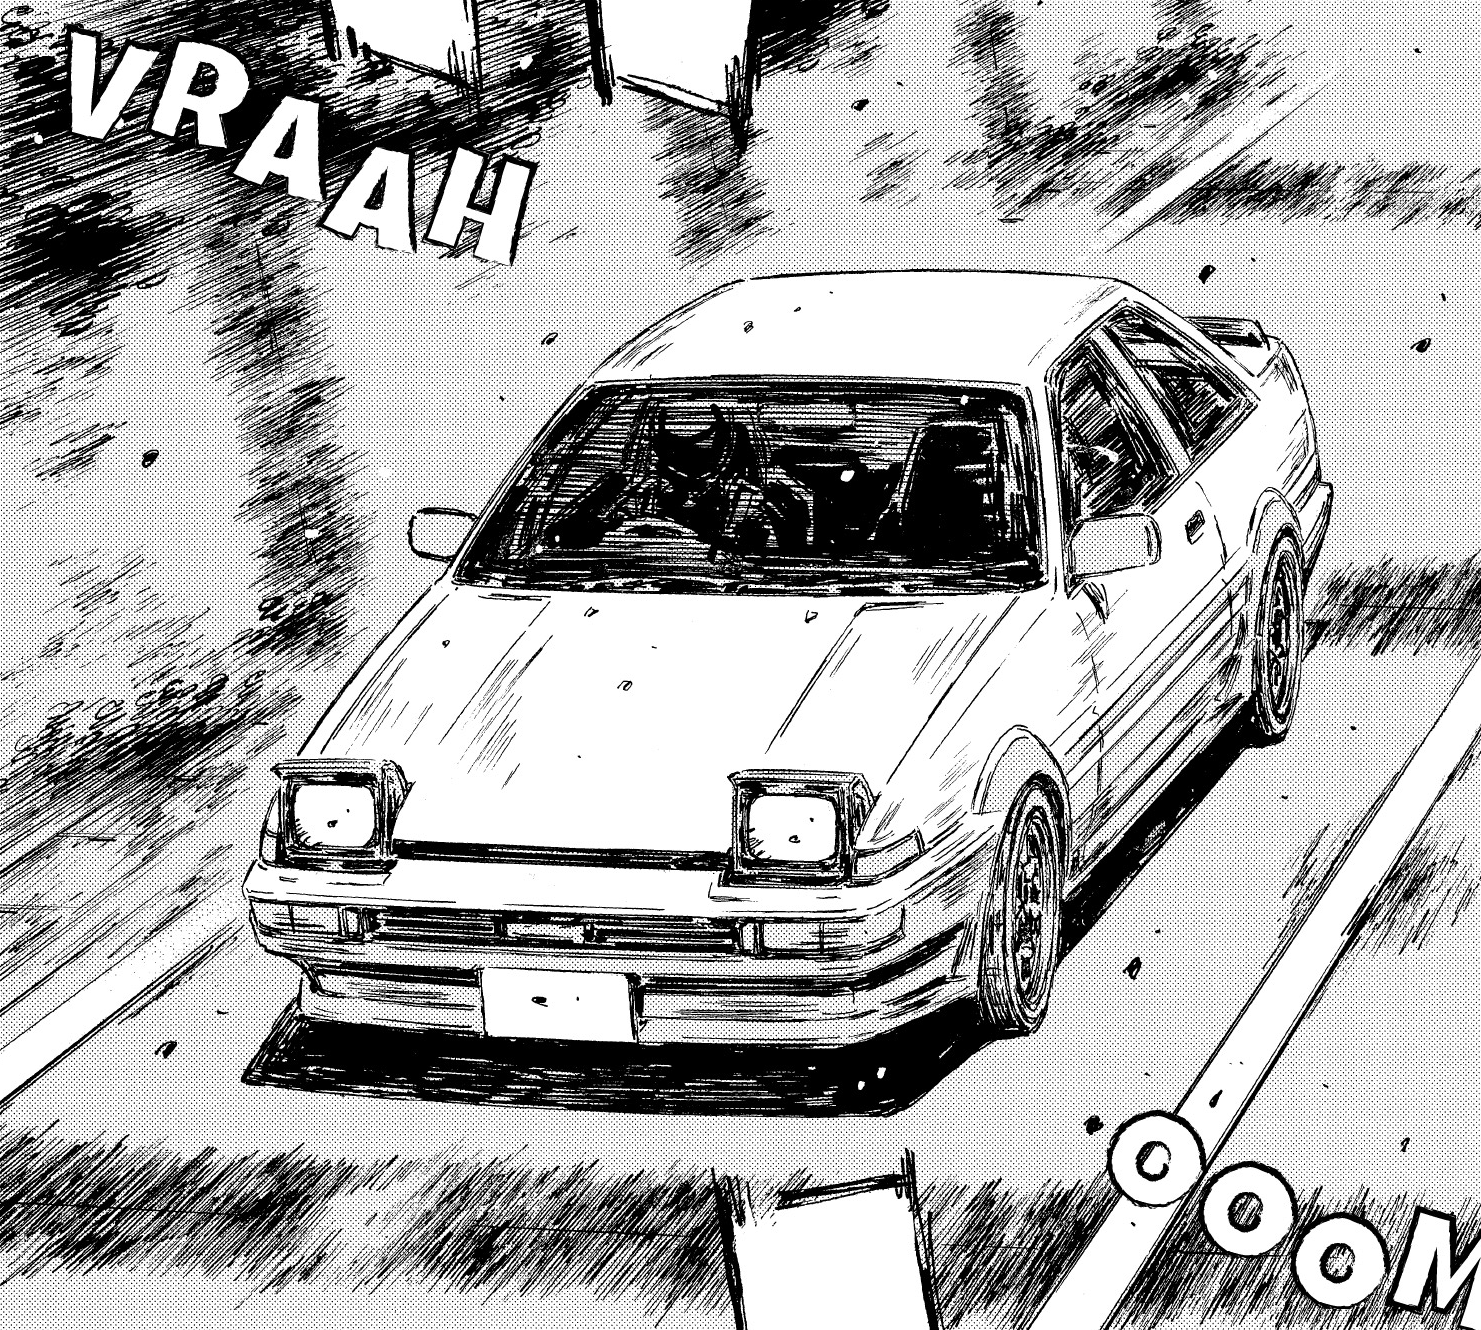 Shinji Inui's Toyota AE86